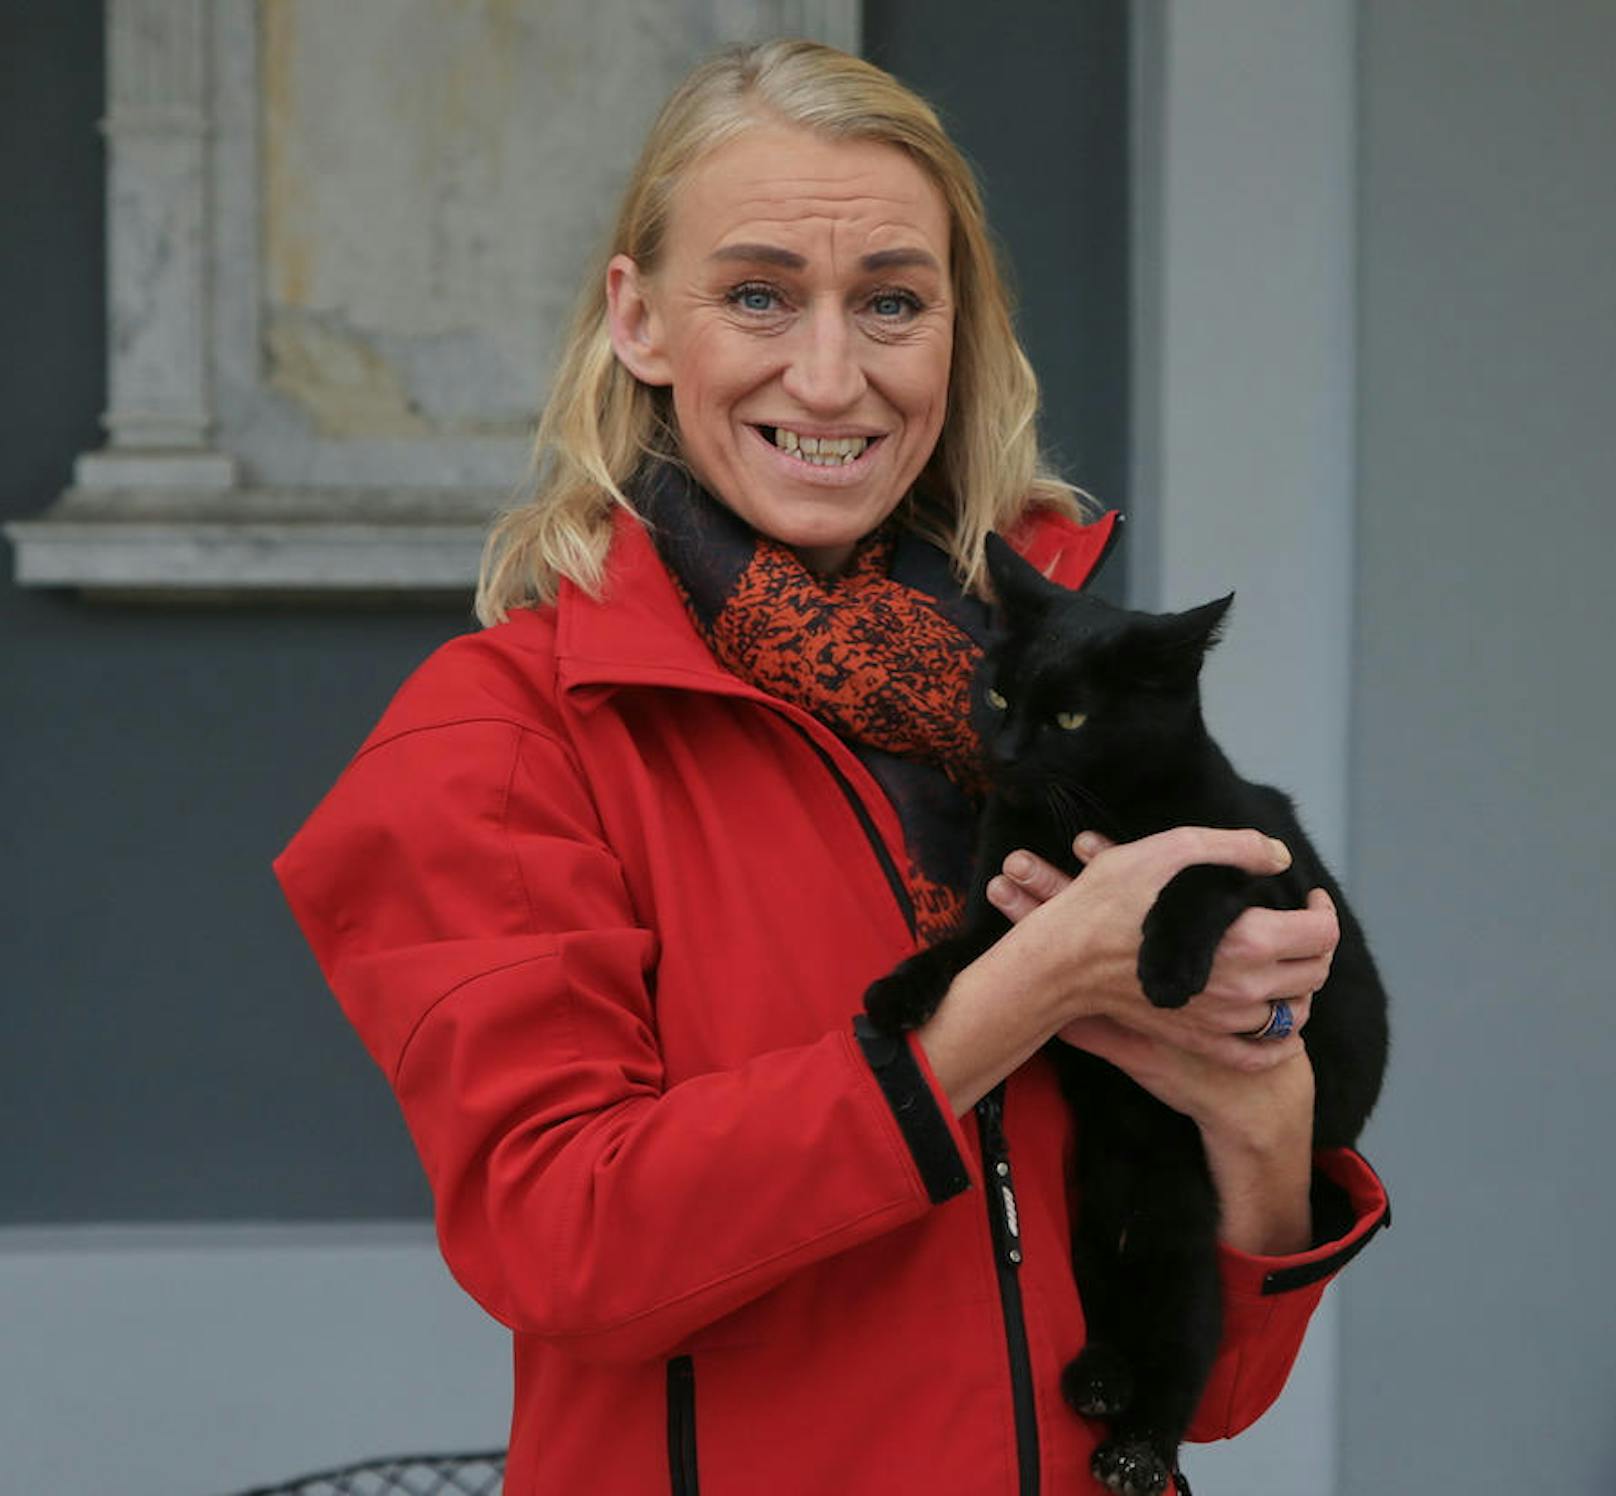 Doris Nicole Eder vom Verein "Tierengel Austria" setzt sich für den Verbleib von "Blacky" ein.